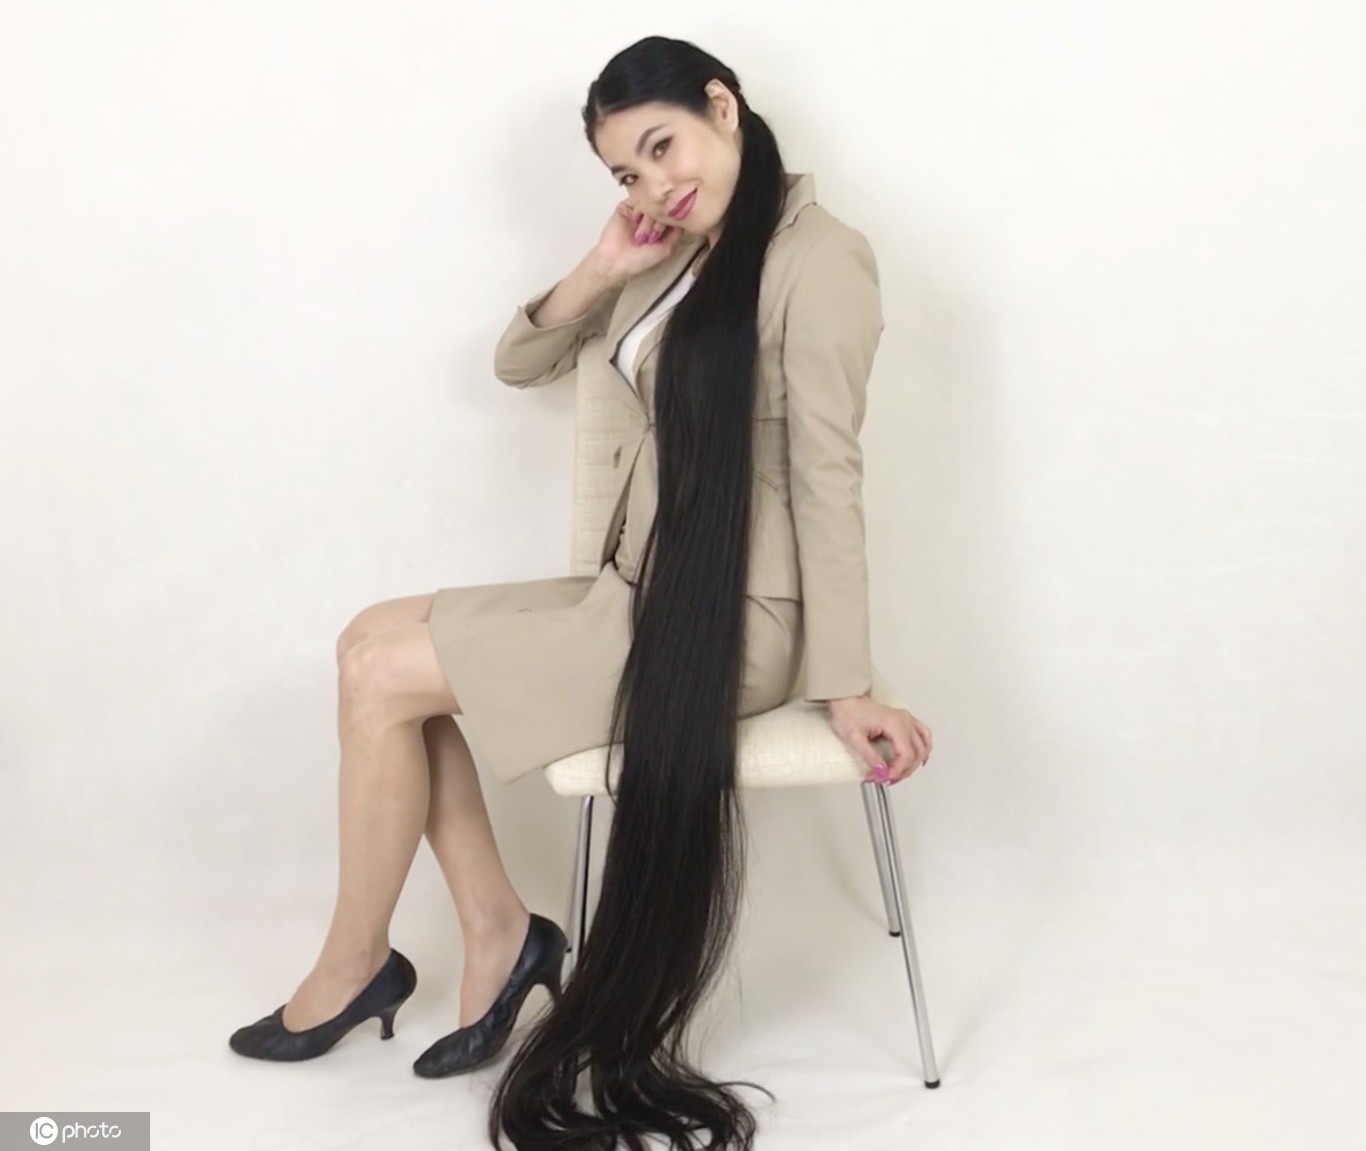 日本女子头发长达17米 连续15年未剪发